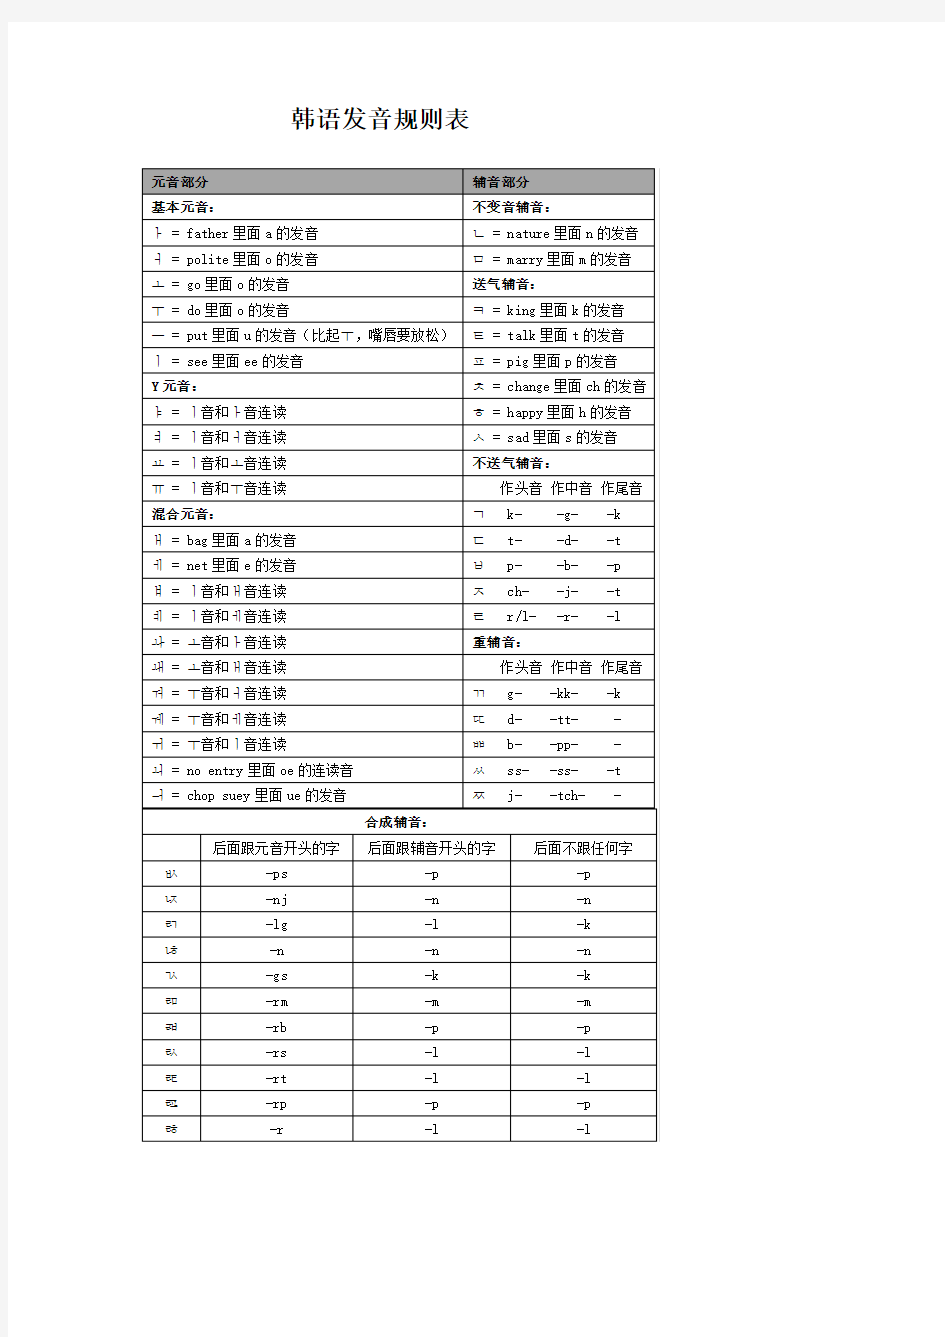 (完整版)韩语发音规则表